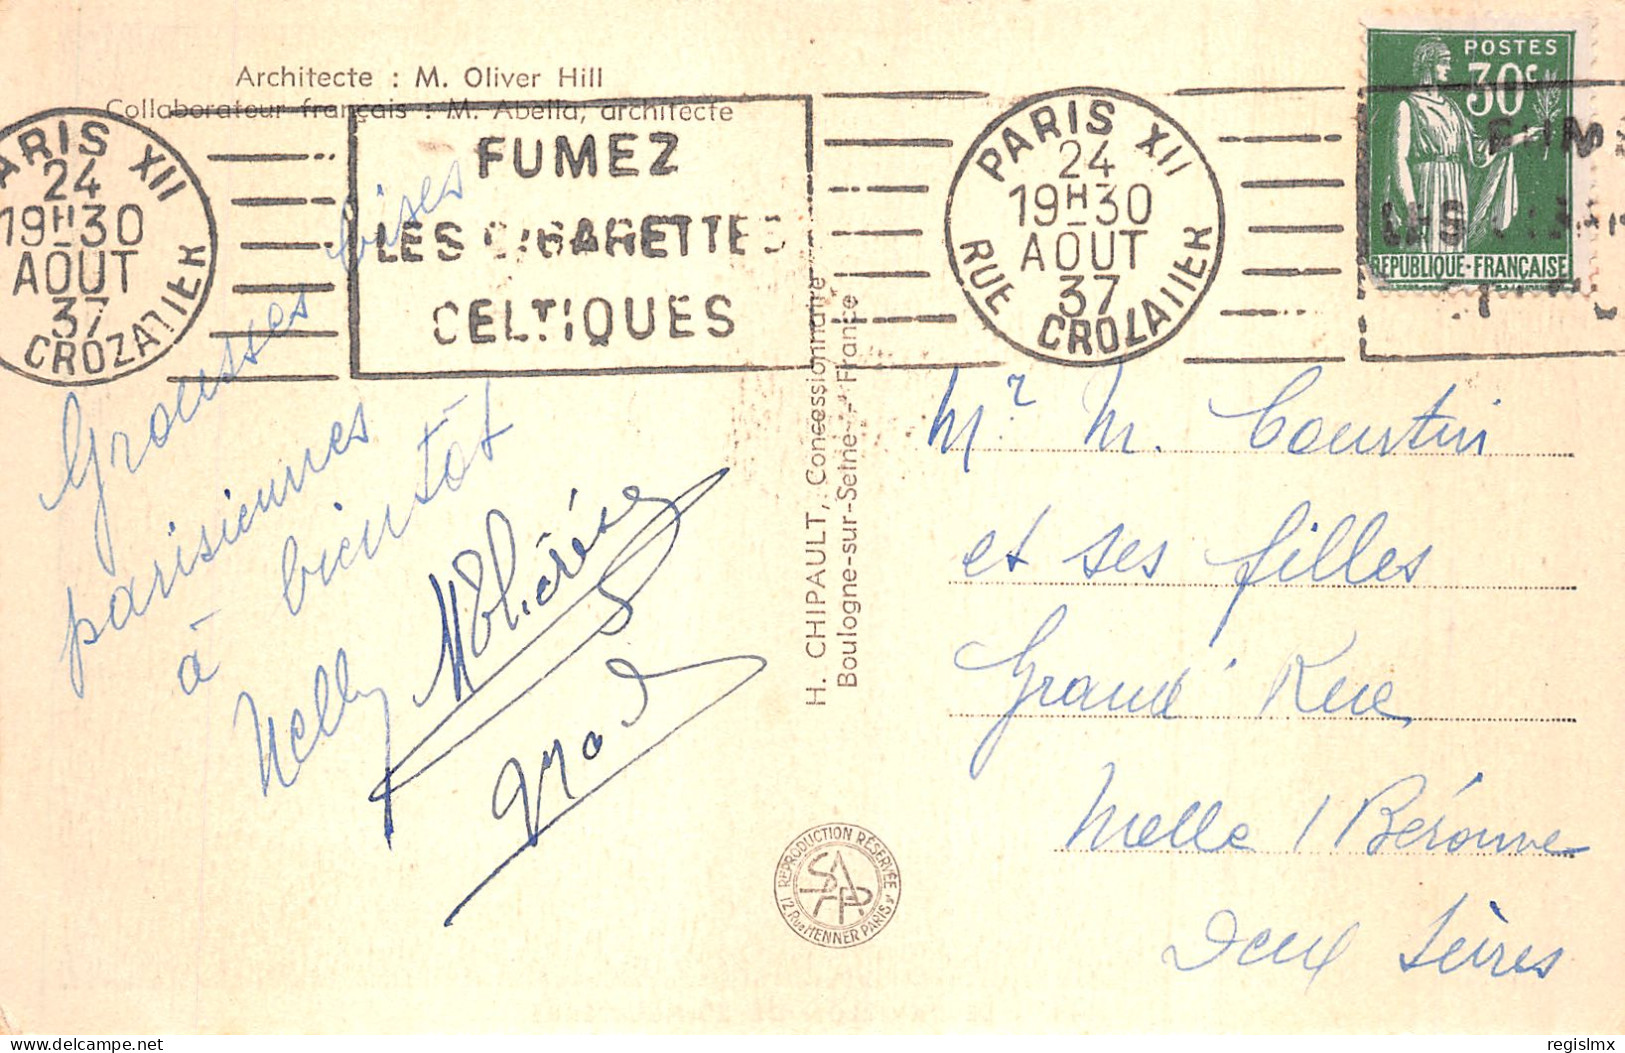 75-PARIS EXPOSITION INTERNATIONALE 1937 PAVILLON DE L ANGLETERRE-N°T1044-A/0371 - Mostre